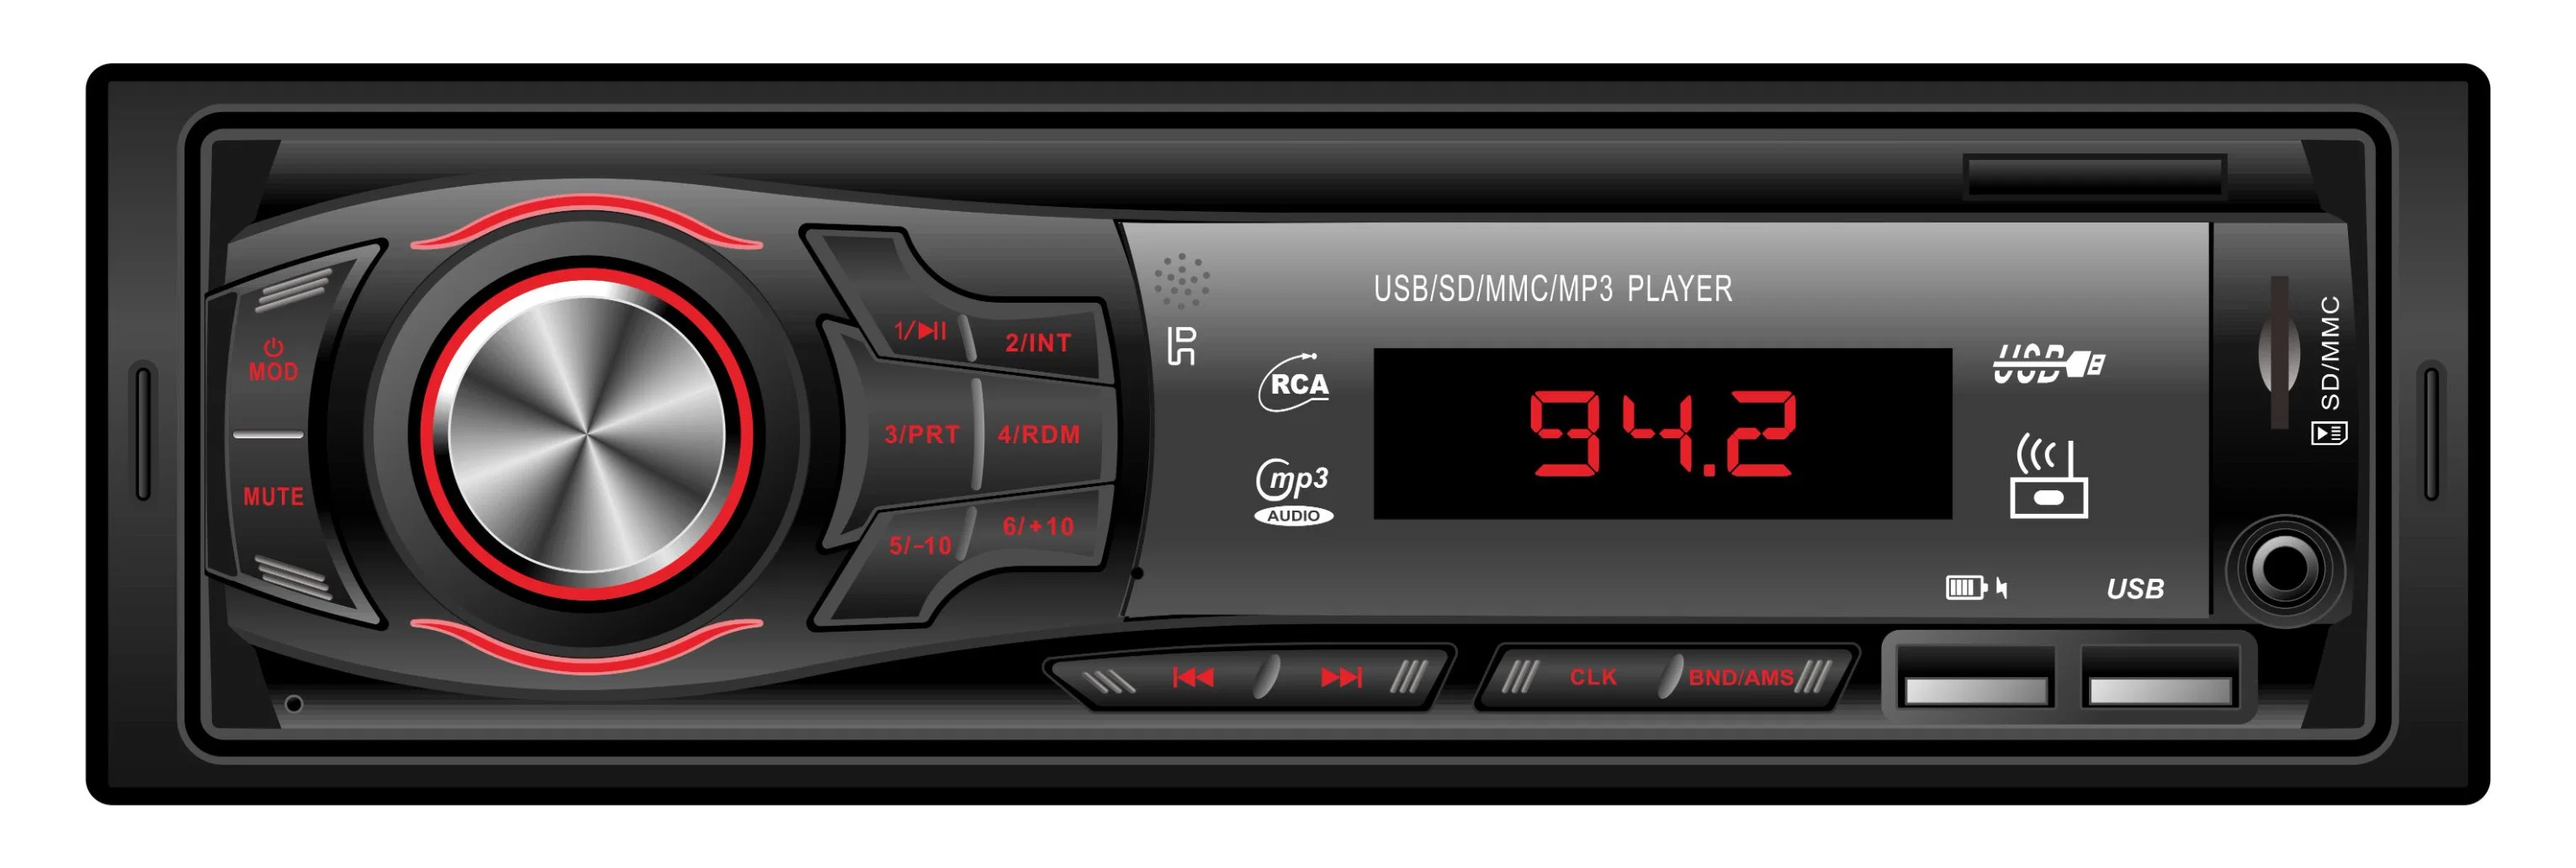 مشغل صوت MP3 متعدد الوسائط بوحدة رأس سيارة DIN فردية